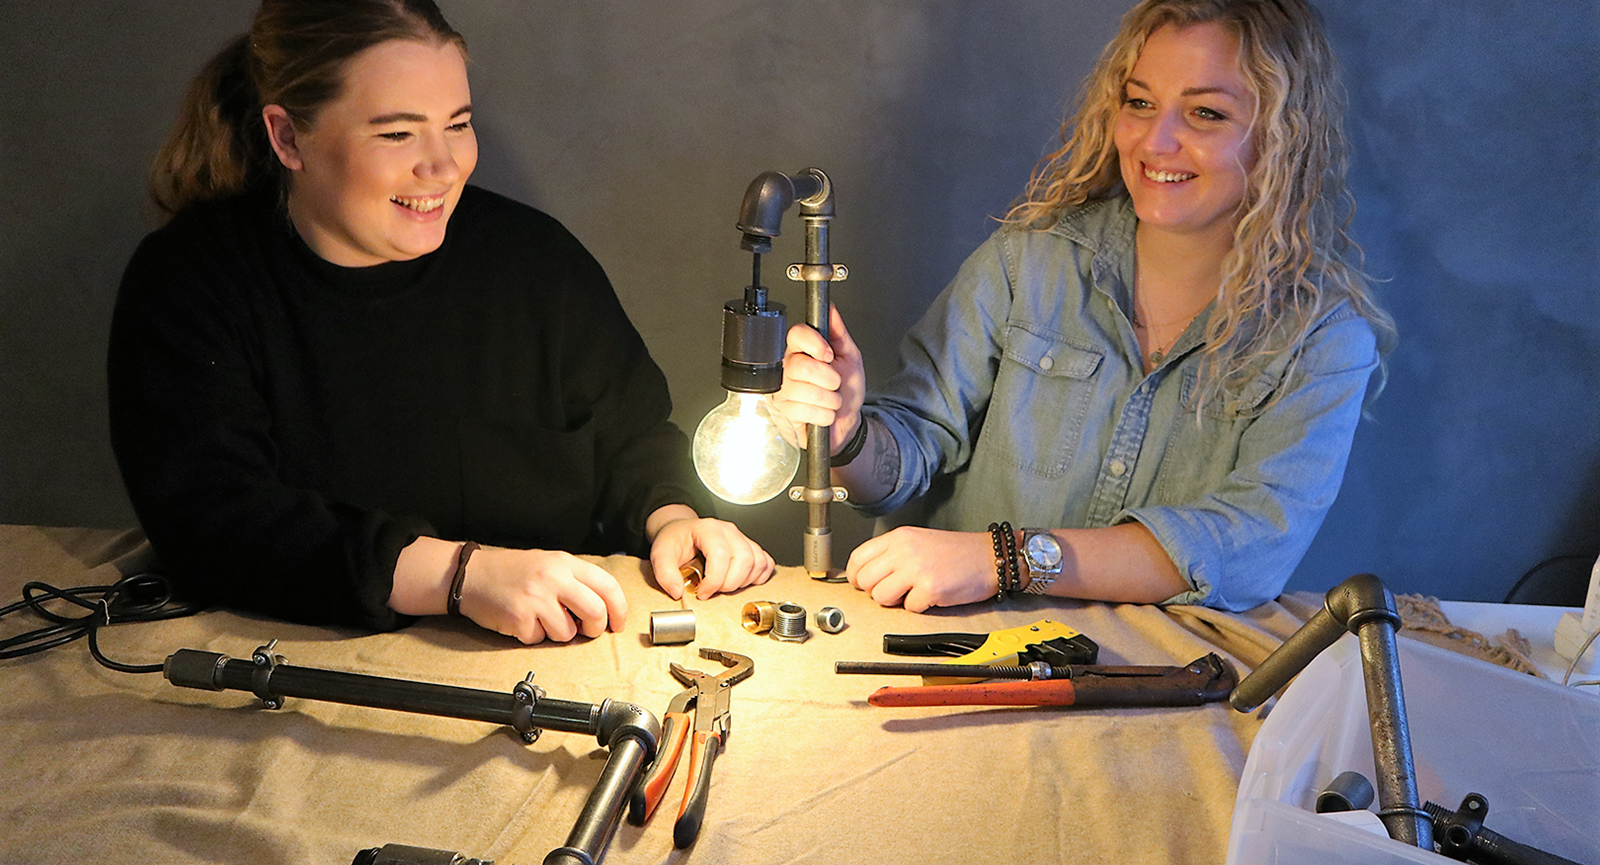 Serviceøkonomerne Cecilie og Lisbeth med en lampe lavet af vandrør og lys i imellem sig